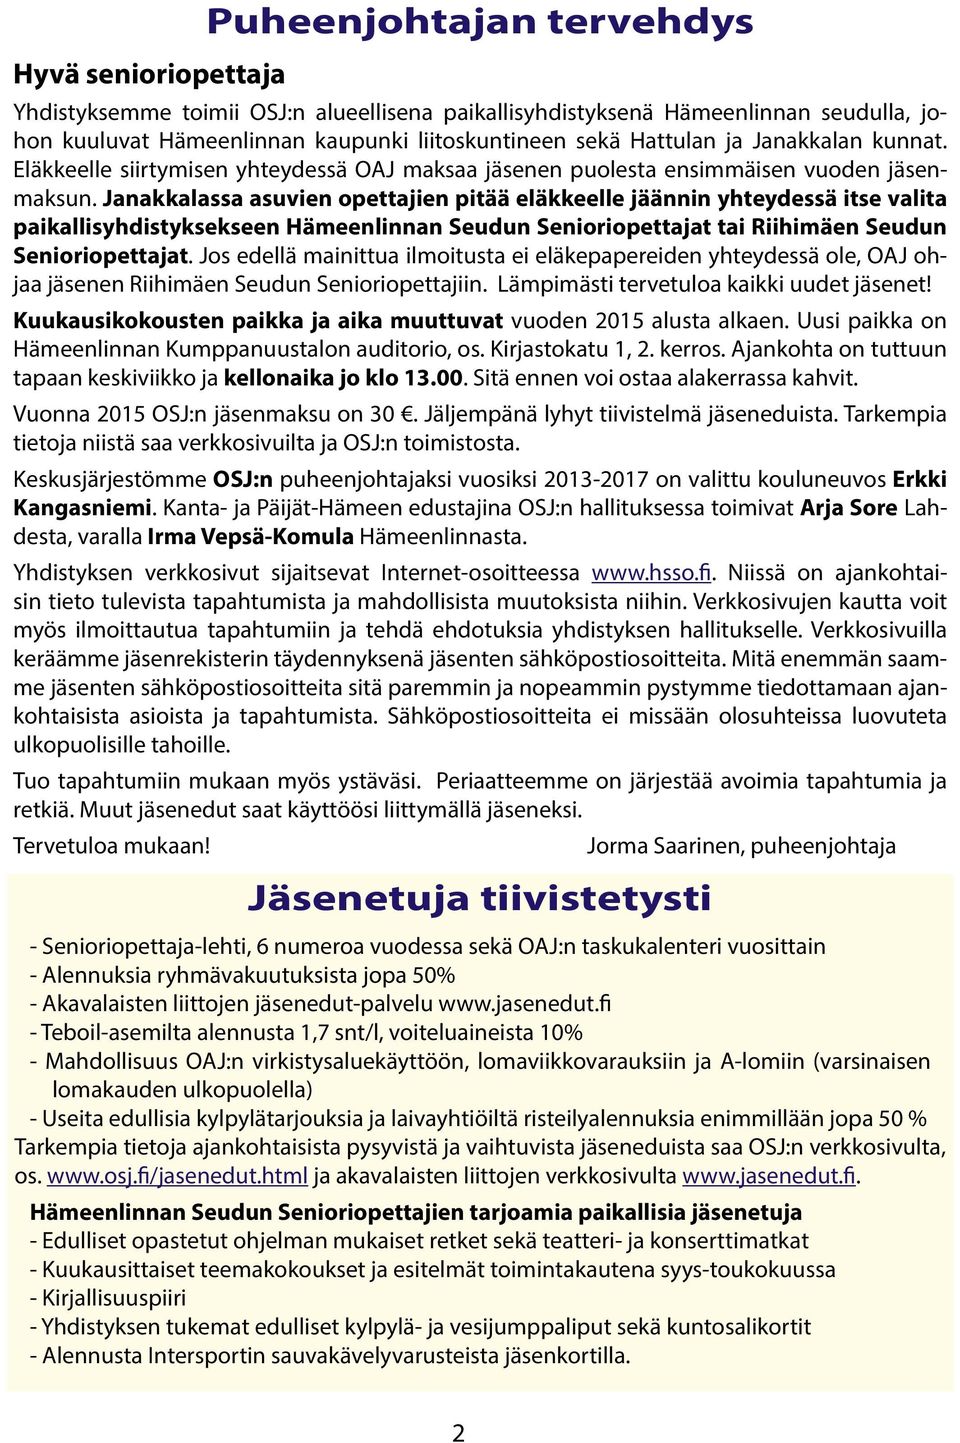 Janakkalassa asuvien opettajien pitää eläkkeelle jäännin yhteydessä itse valita paikallisyhdistyksekseen Hämeenlinnan Seudun Senioriopettajat tai Riihimäen Seudun Senioriopettajat.